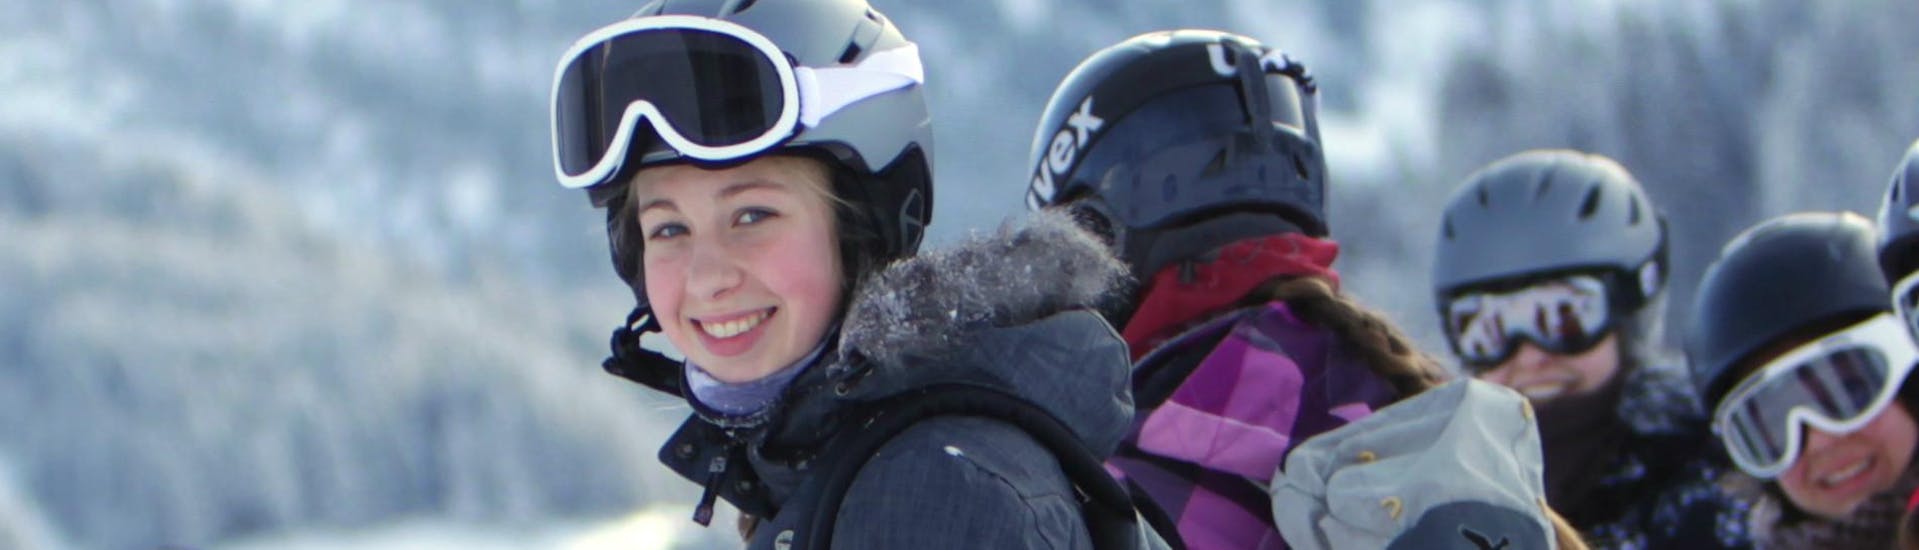 Clases de esquí para niños a partir de 13 años para todos los niveles.